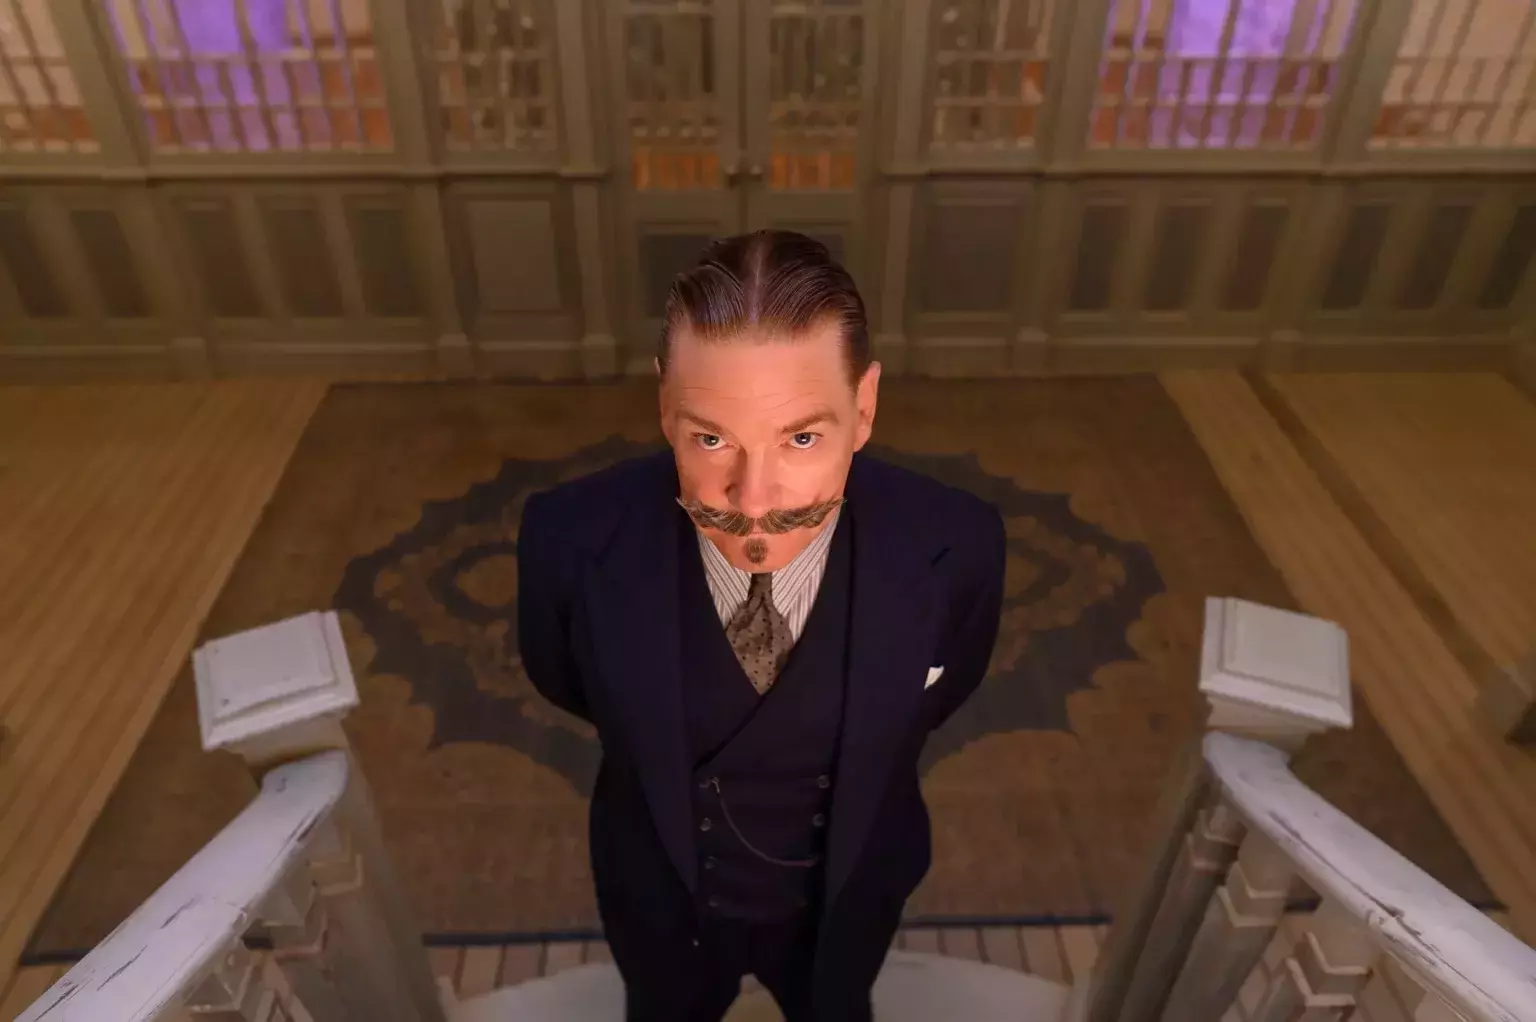 кадр из фильма “Смерть на Ниле”, в кадре Кеннет Брана – Hercule Poirot